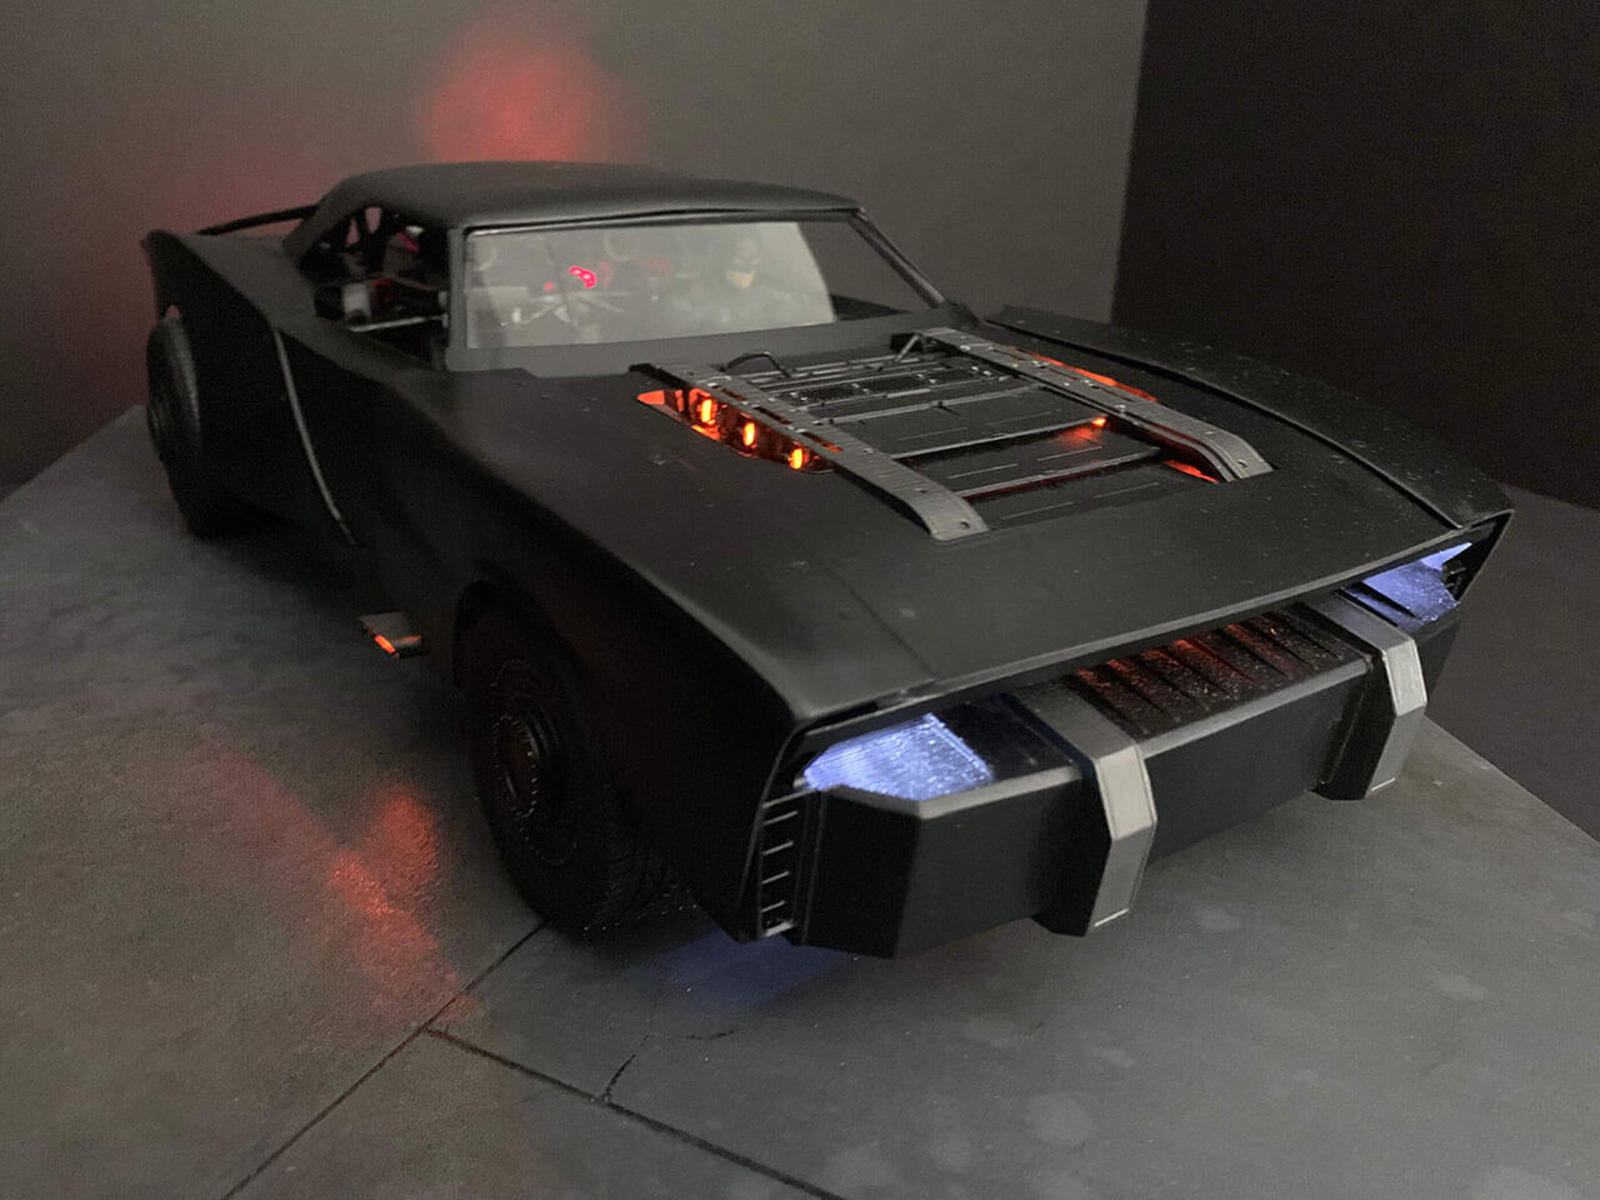 سيارة باتموبيل الجديدة تظهر في إعلان فيلم باتمان القادم 23